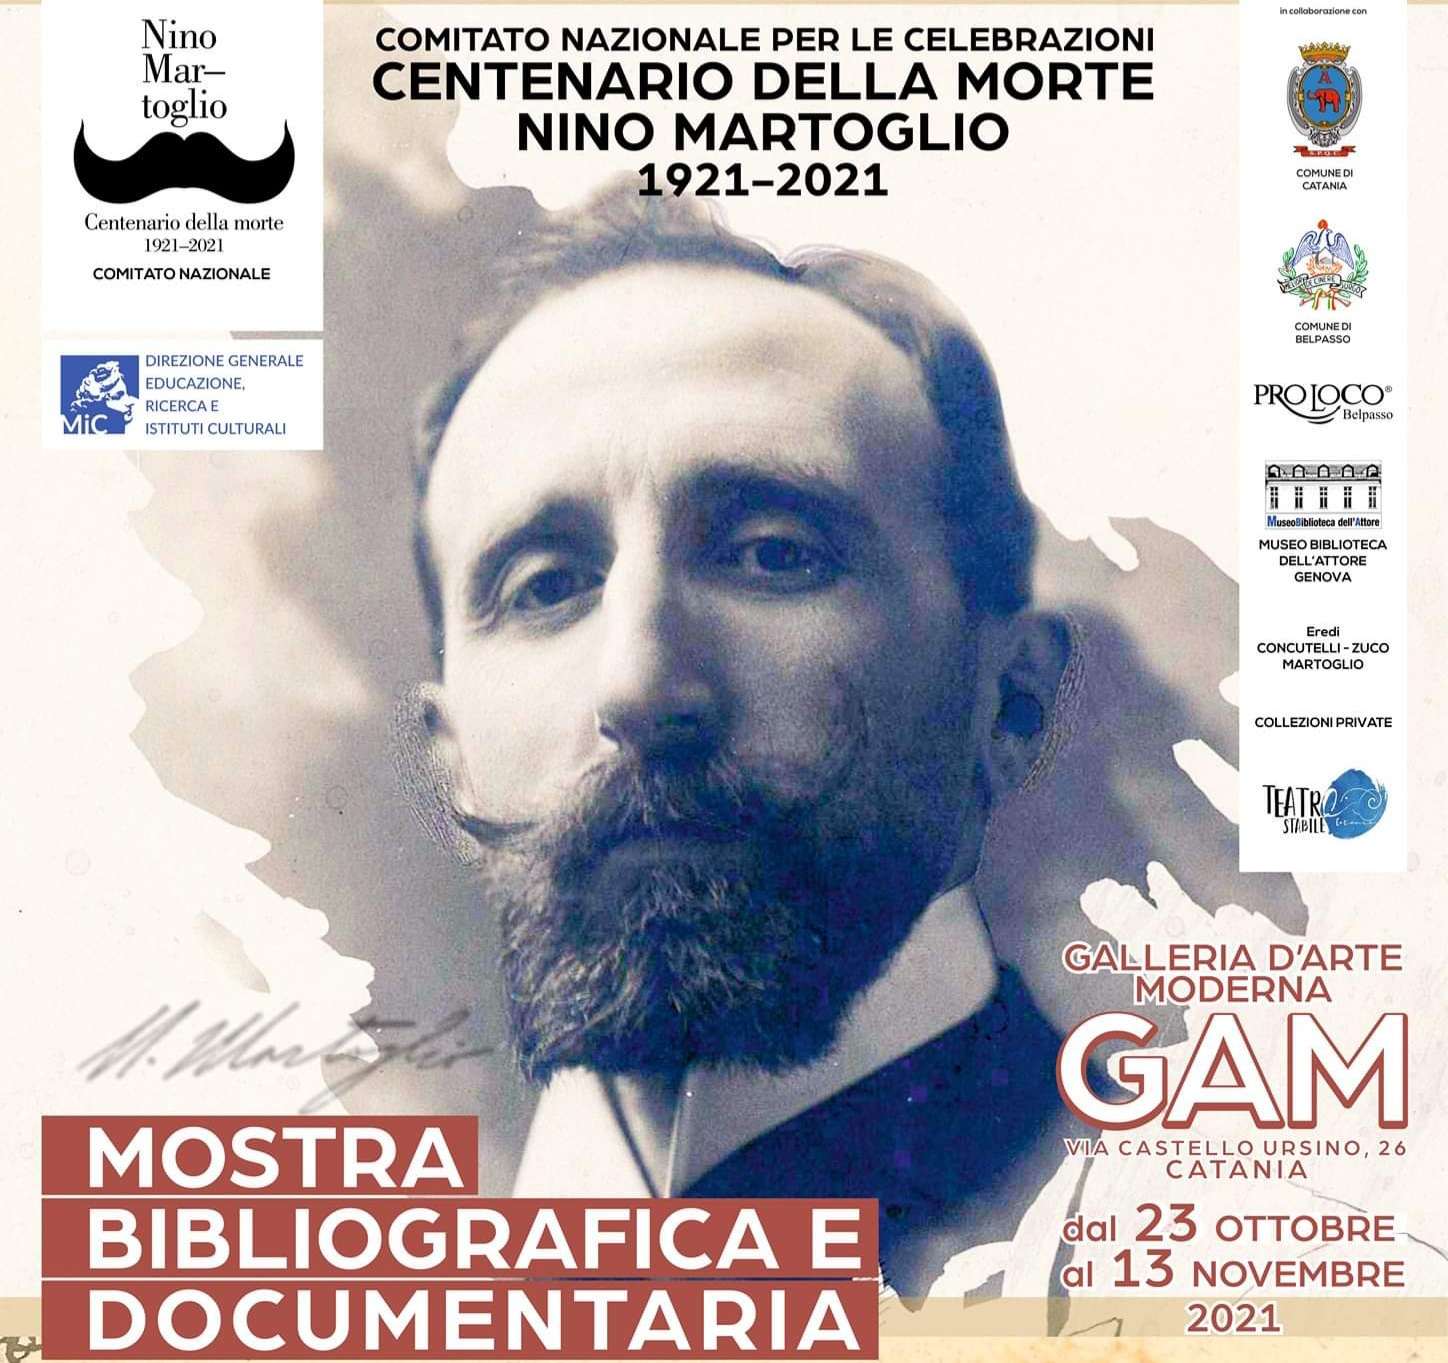 Centenario Nino Martoglio: alla GAM di Catania una straordinaria mostra bibliografica e documentaria. Sabato 23 ottobre l’inaugurazione.